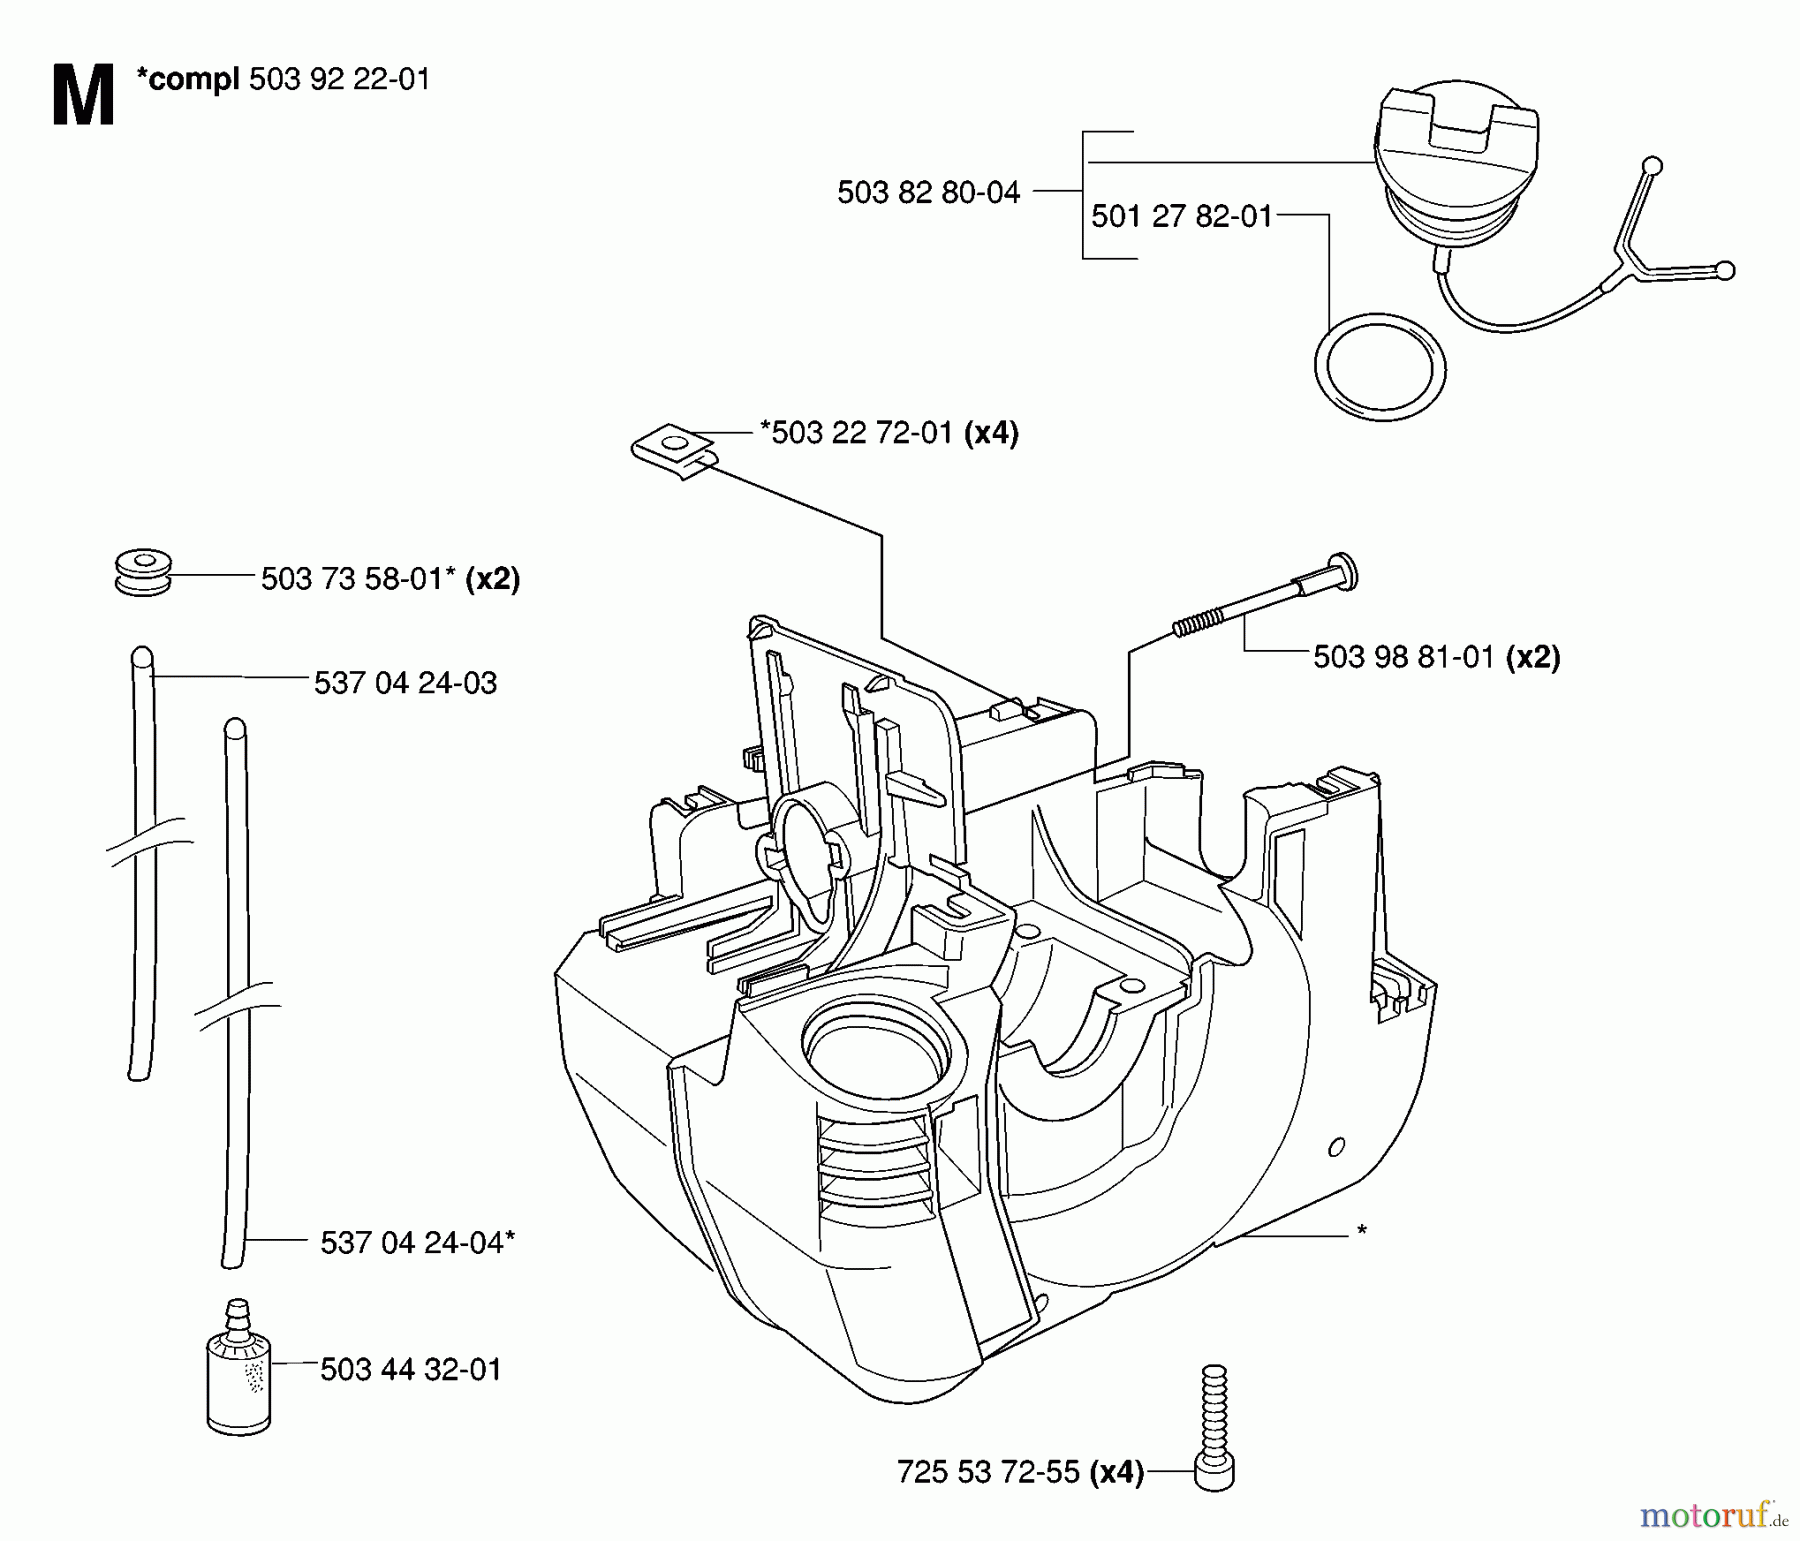  Jonsered Motorsensen, Trimmer GR2036 - Jonsered String/Brush Trimmer (2006-10) CRANKCASE